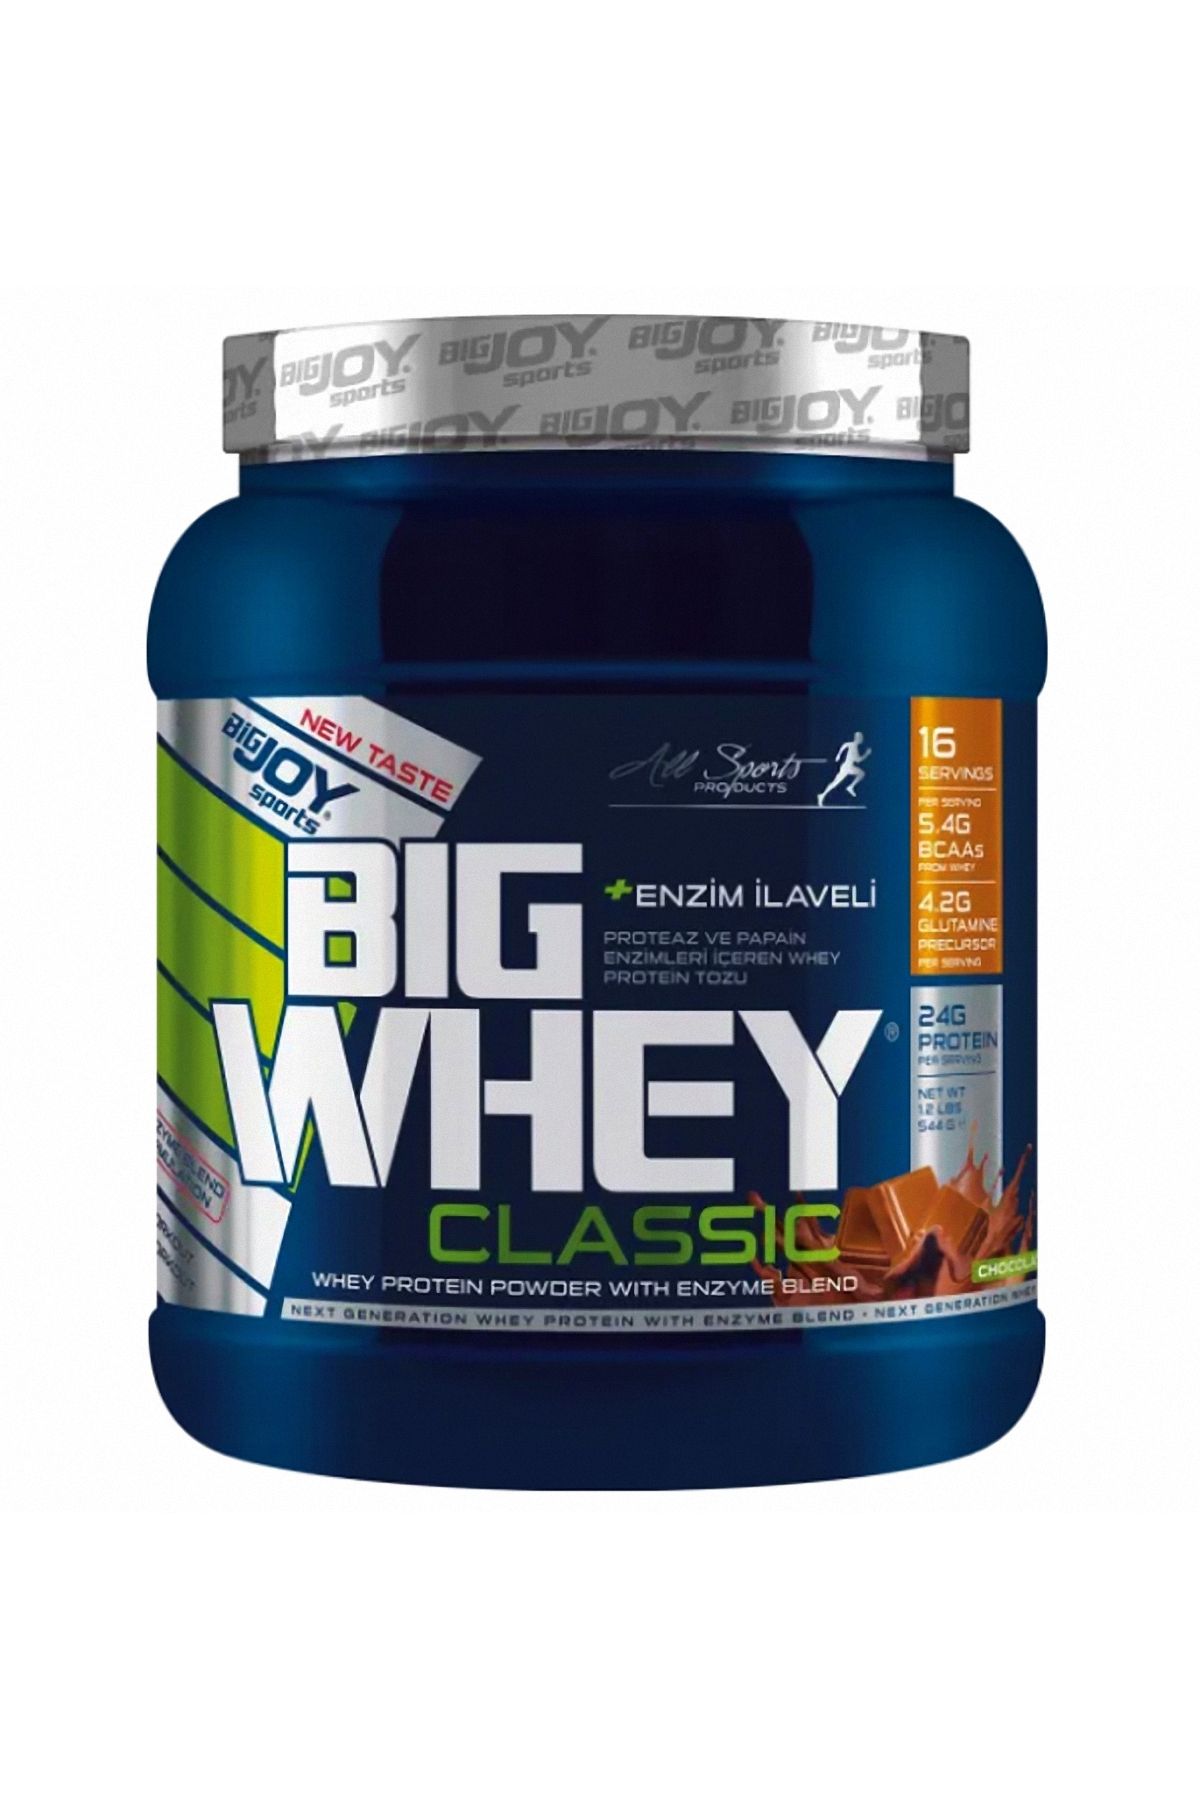 Bigjoy Sports BIGWHEY Whey Protein Classic Çikolata 544g 16 Servis